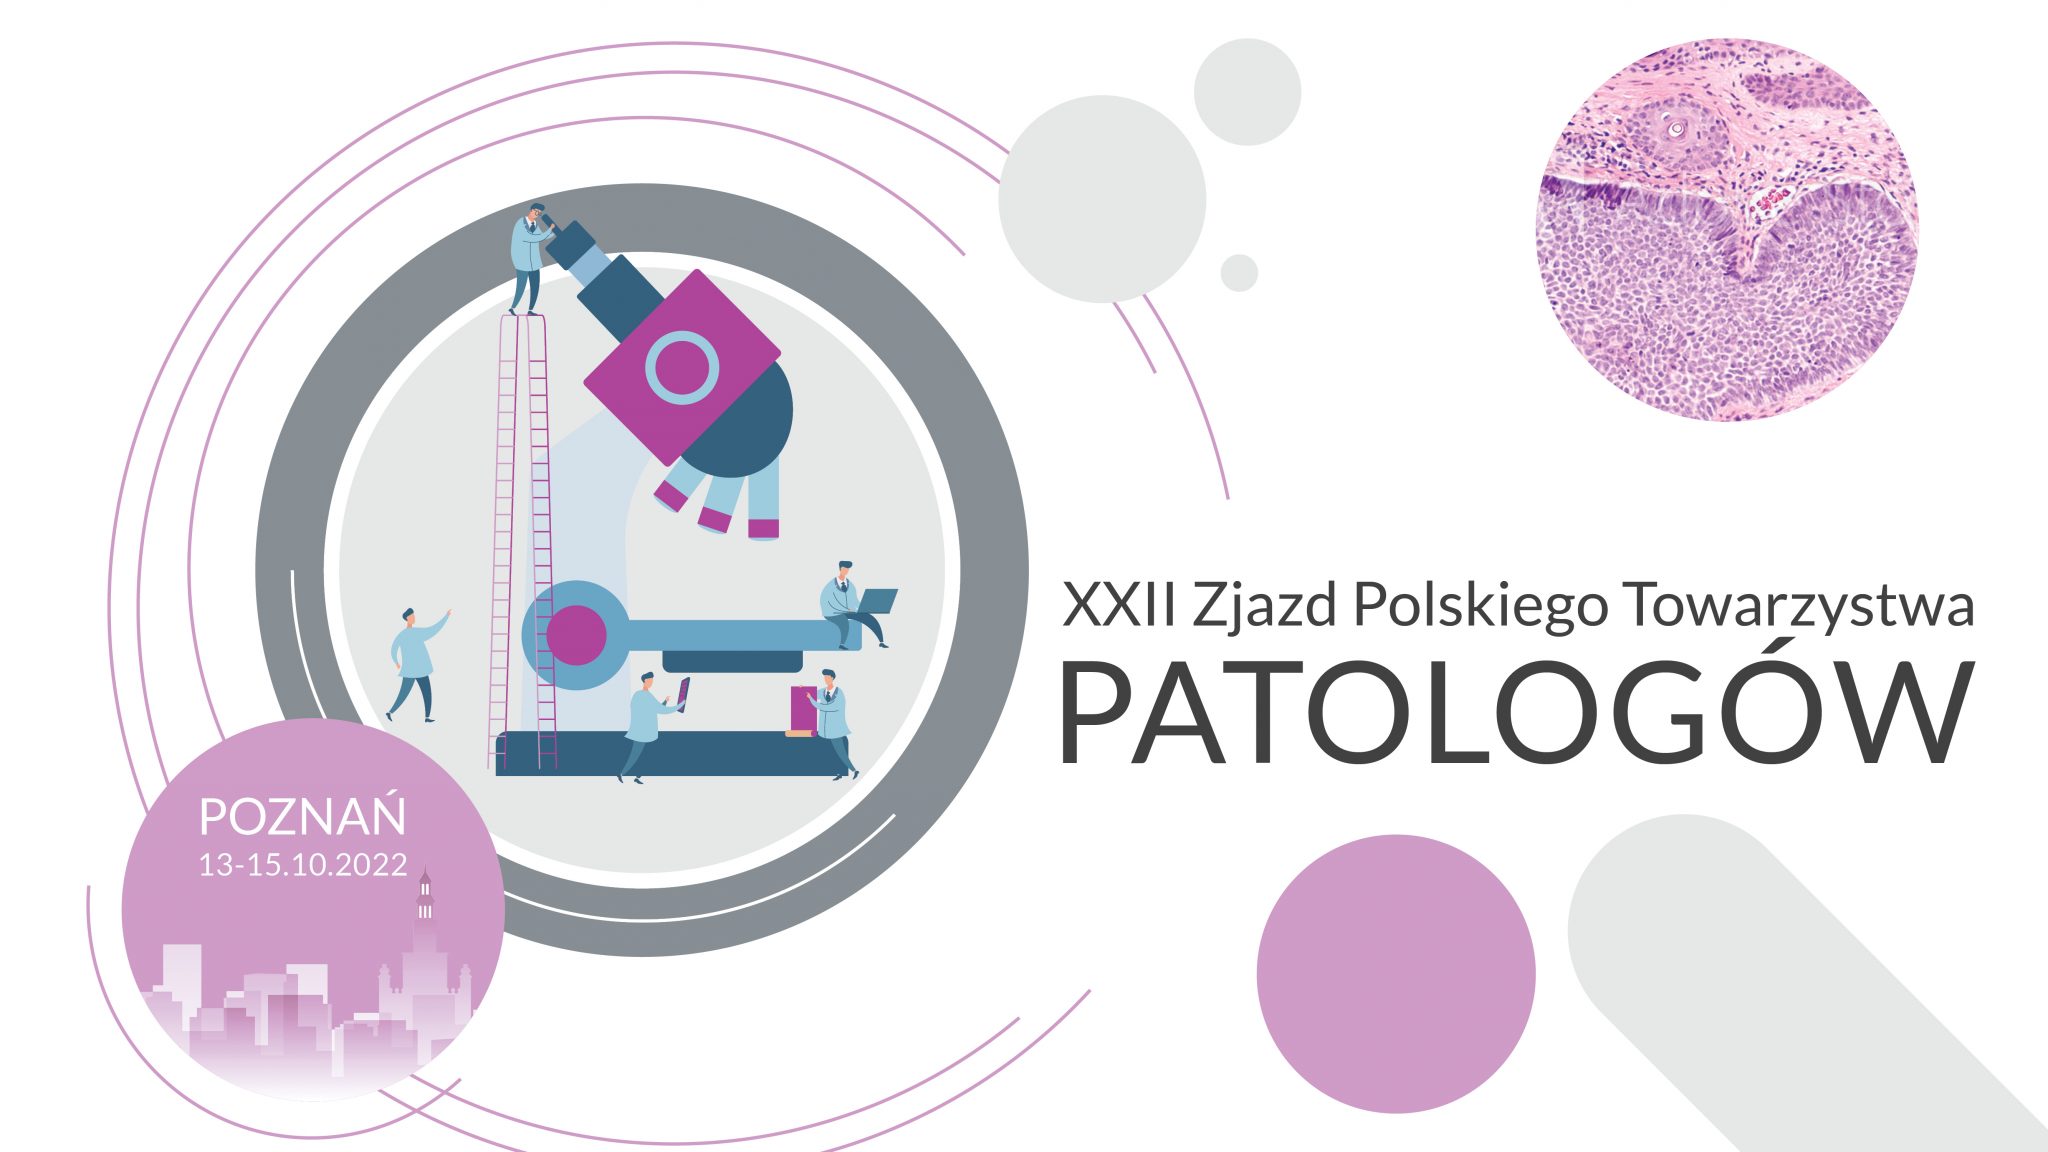 XXII Zjazd Polskiego Towarzystwa Patologii